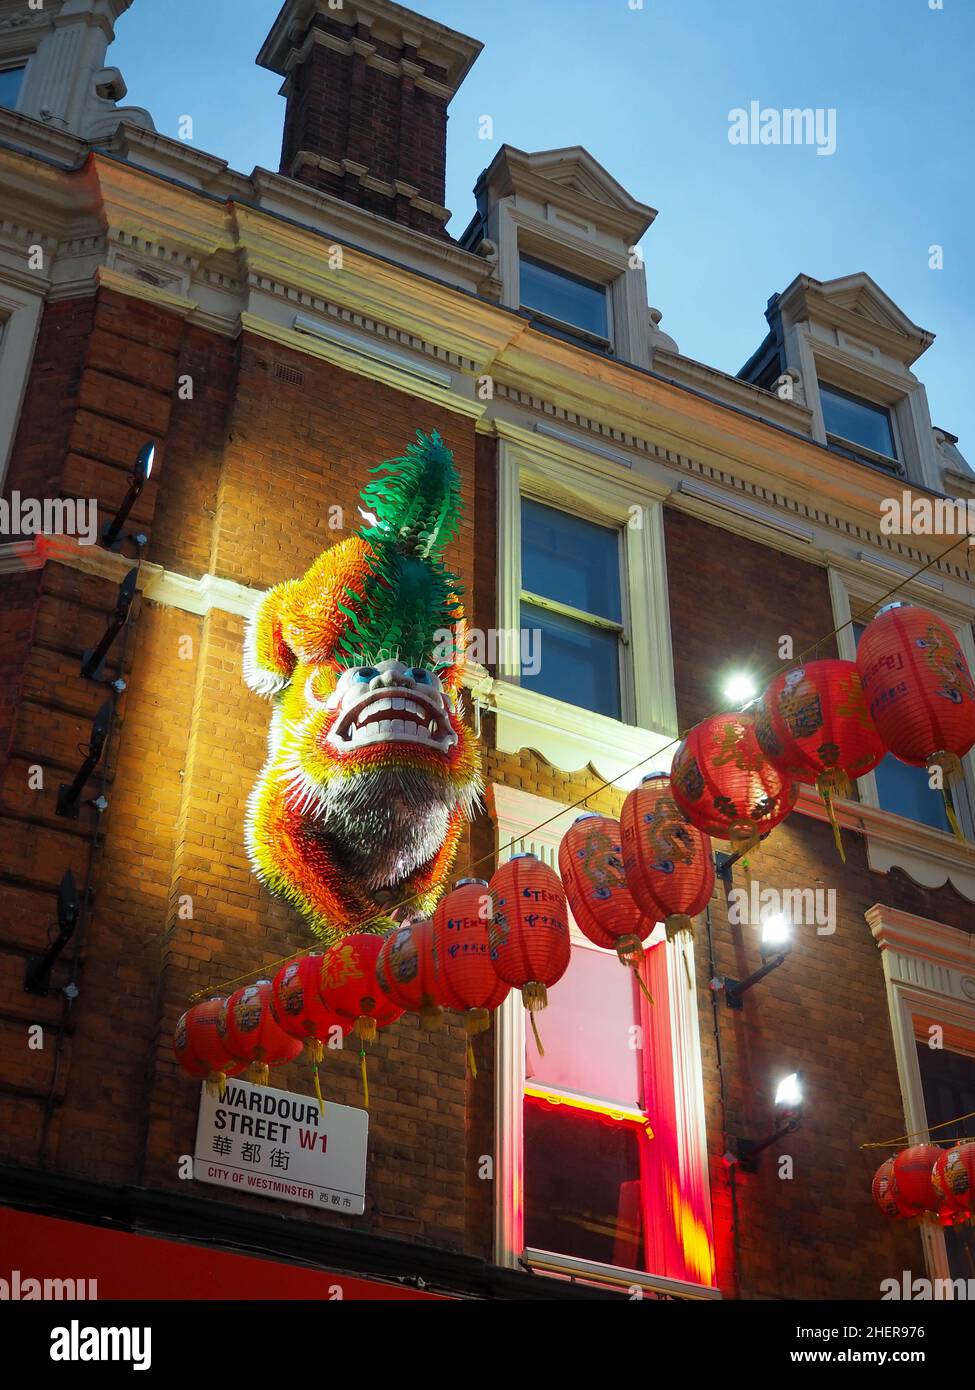 China Town Londres, dragon chinois marchant sur le côté d'un bâtiment. Banque D'Images